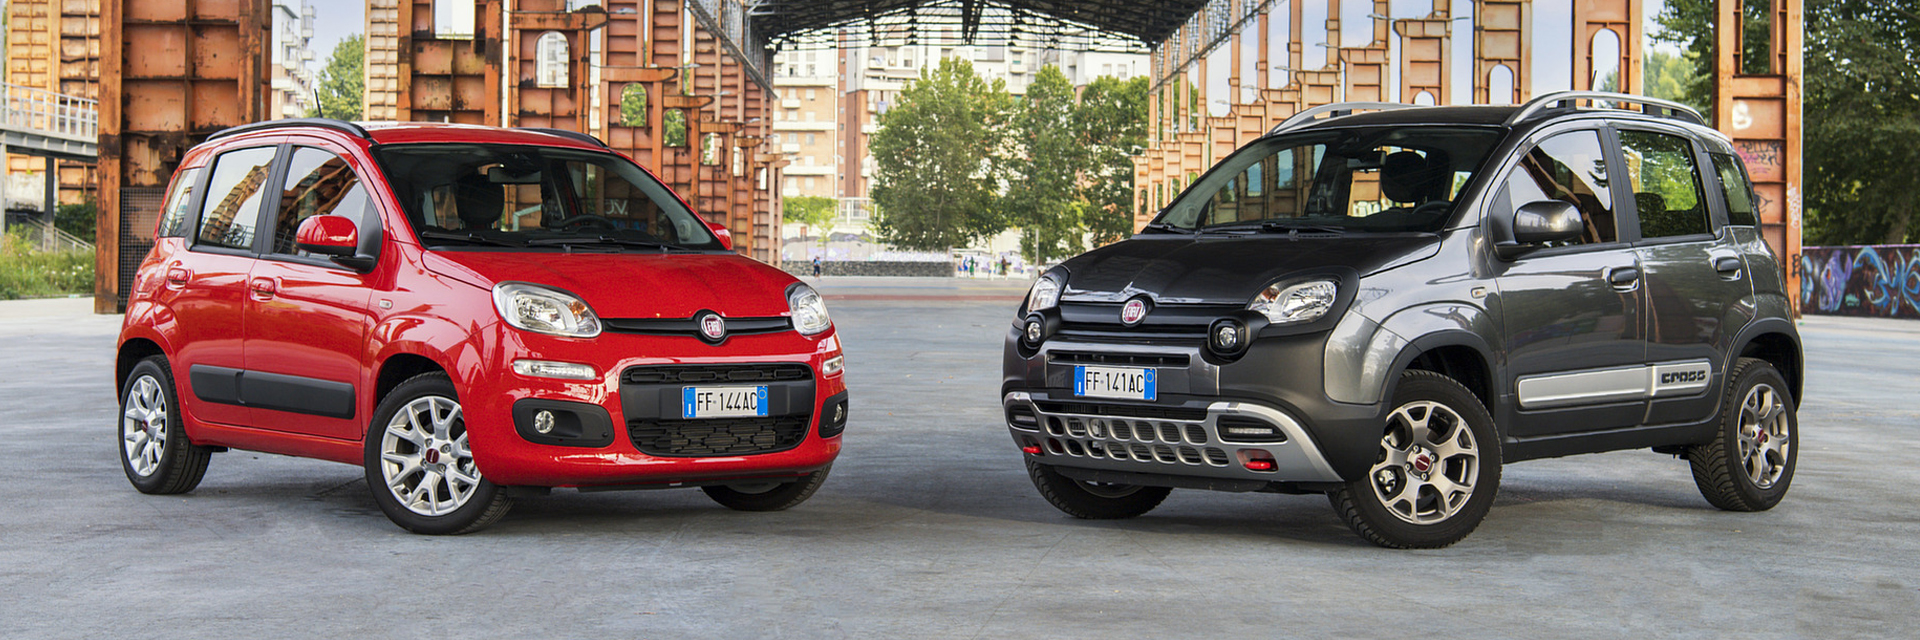 Fiat Panda, carros usados, Carros novos, carros de serviço